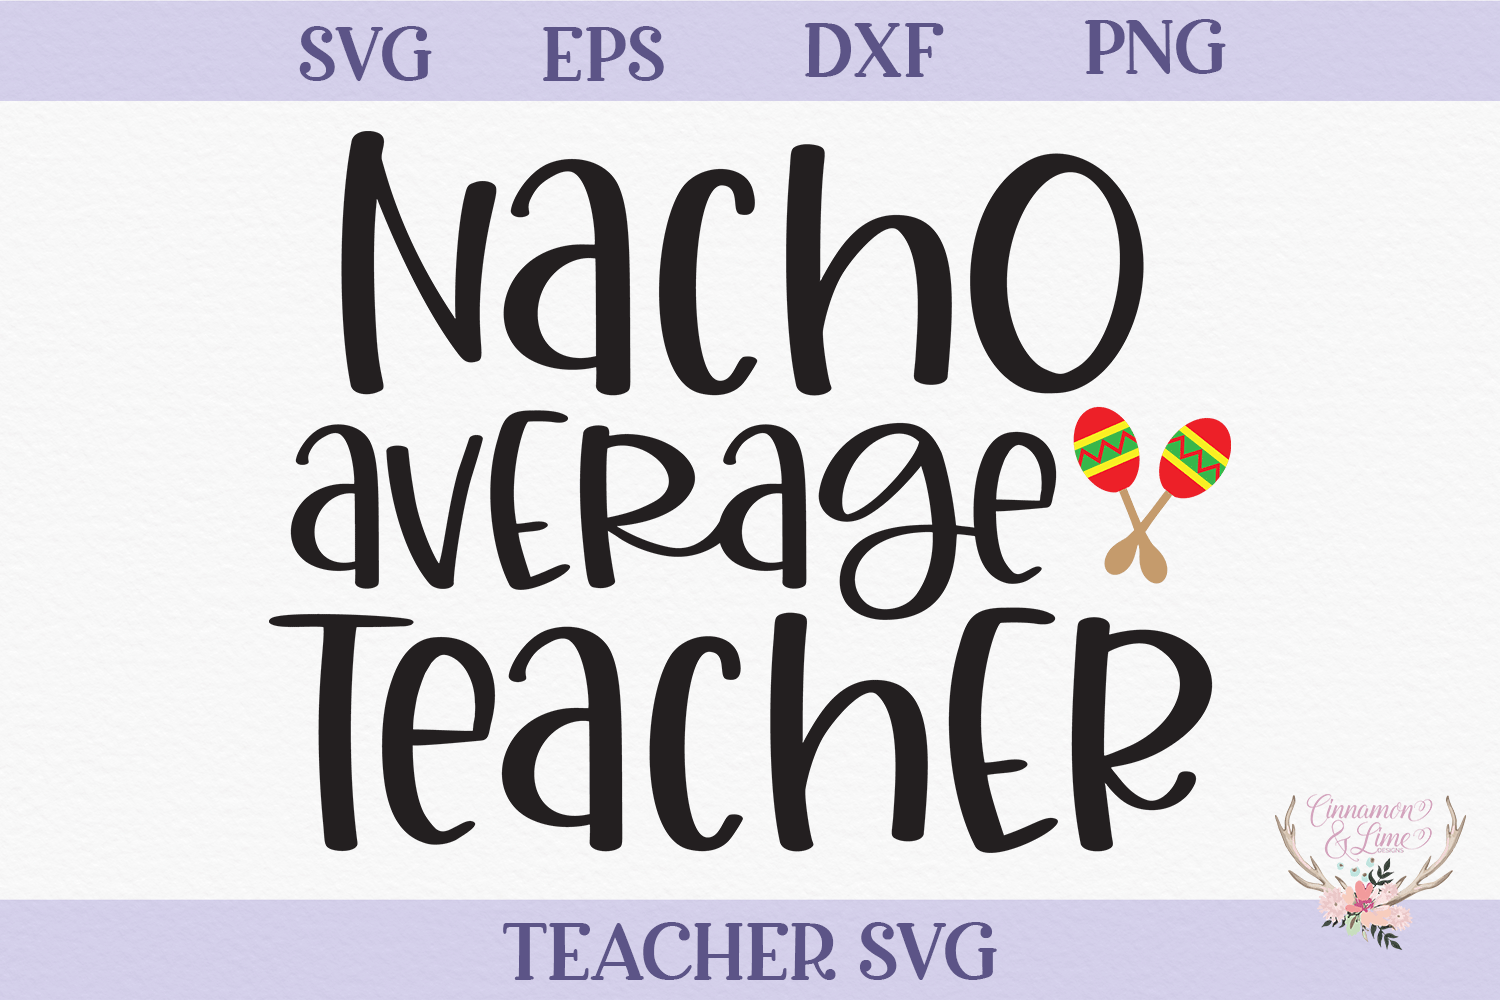 teacher-svg-nacho-average-teacher